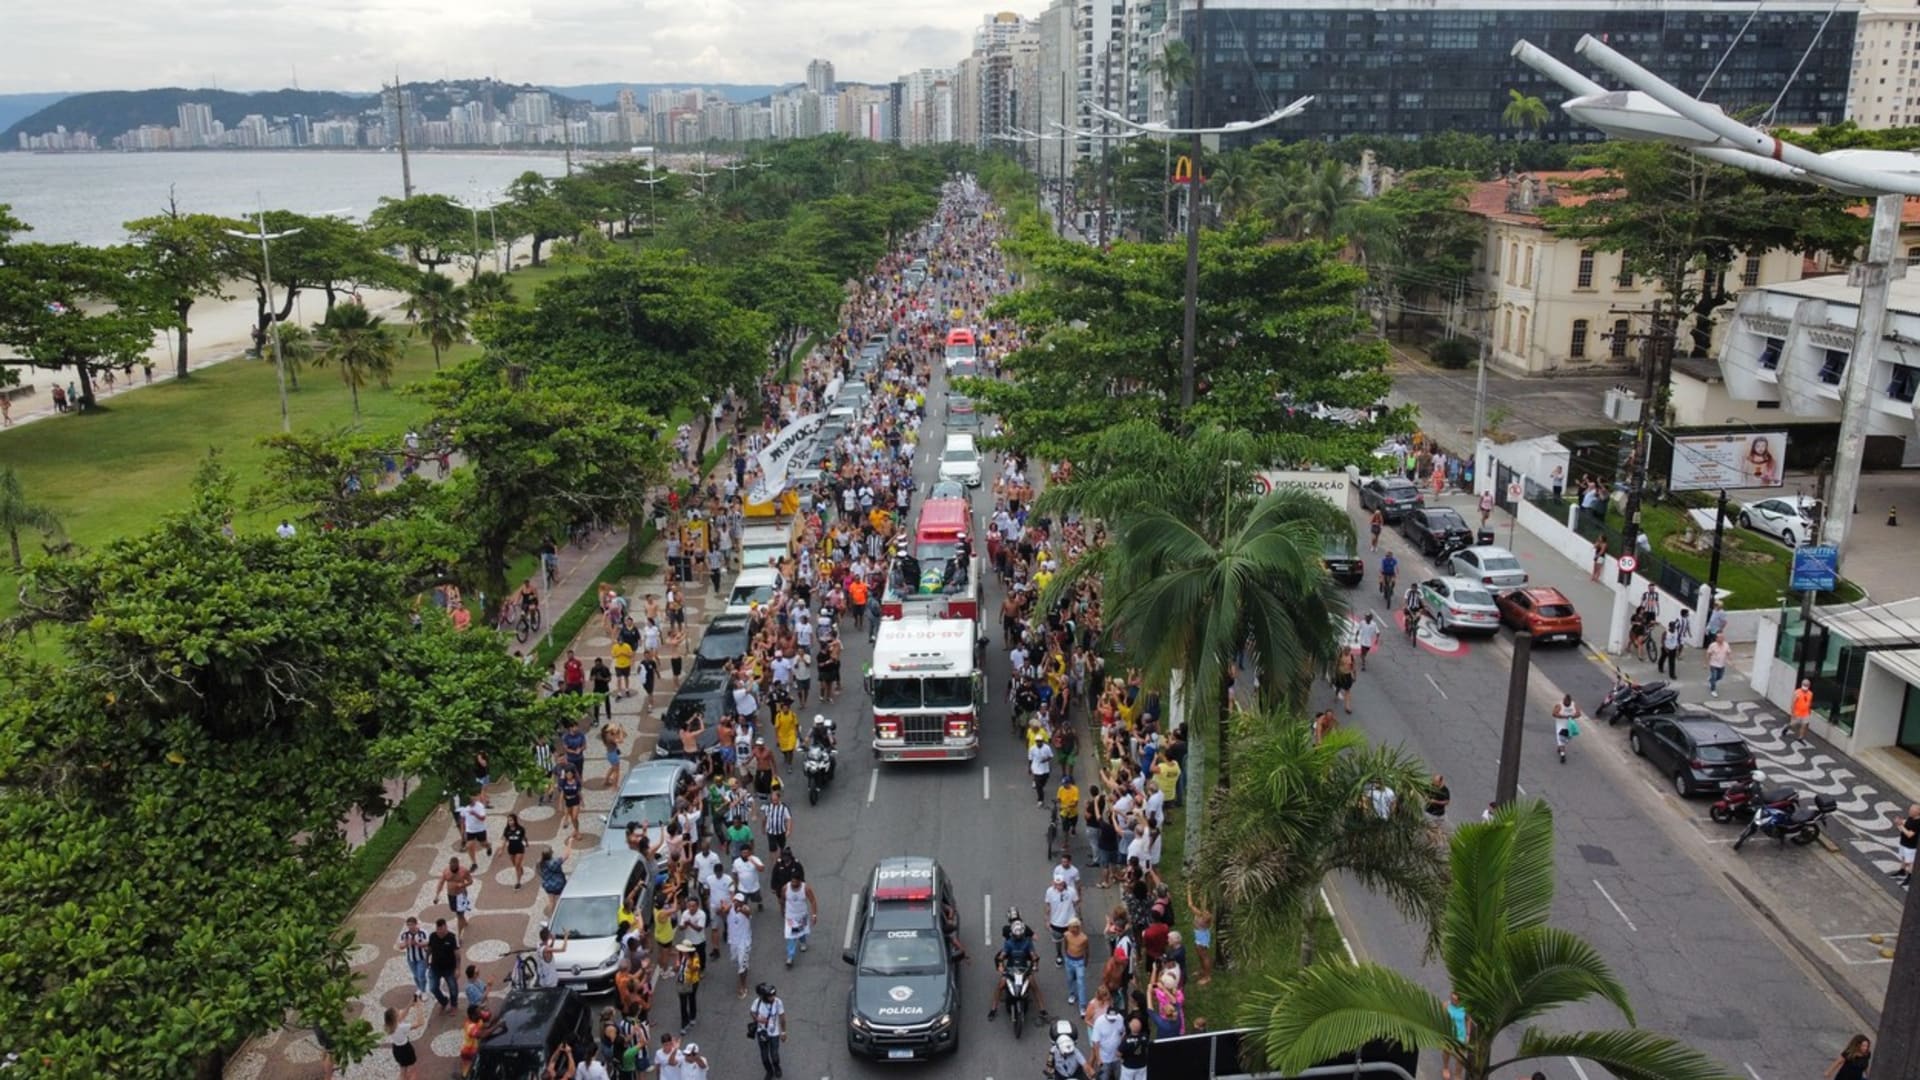 Ulice Santosu lemovaly tisícovky lidí. Chtěly naposledy uctít Pelého.